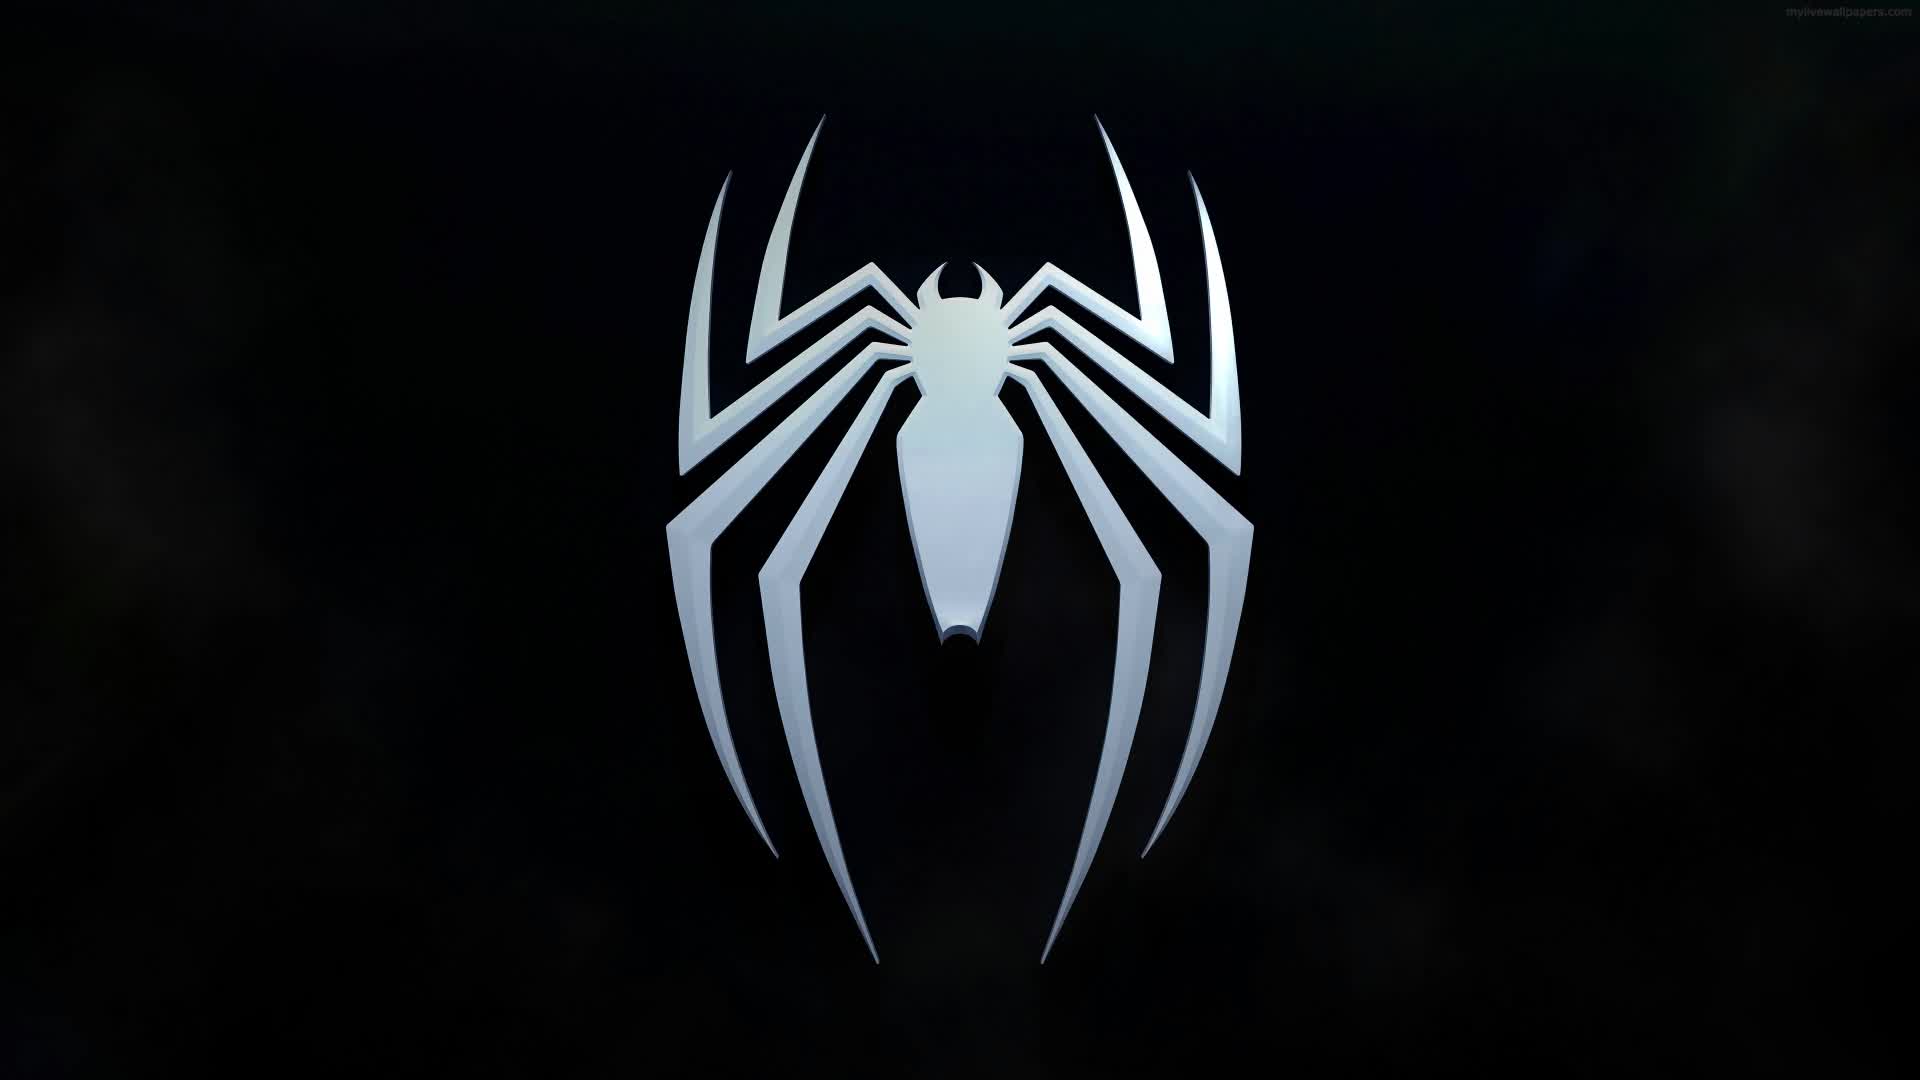 spiderman logo hd